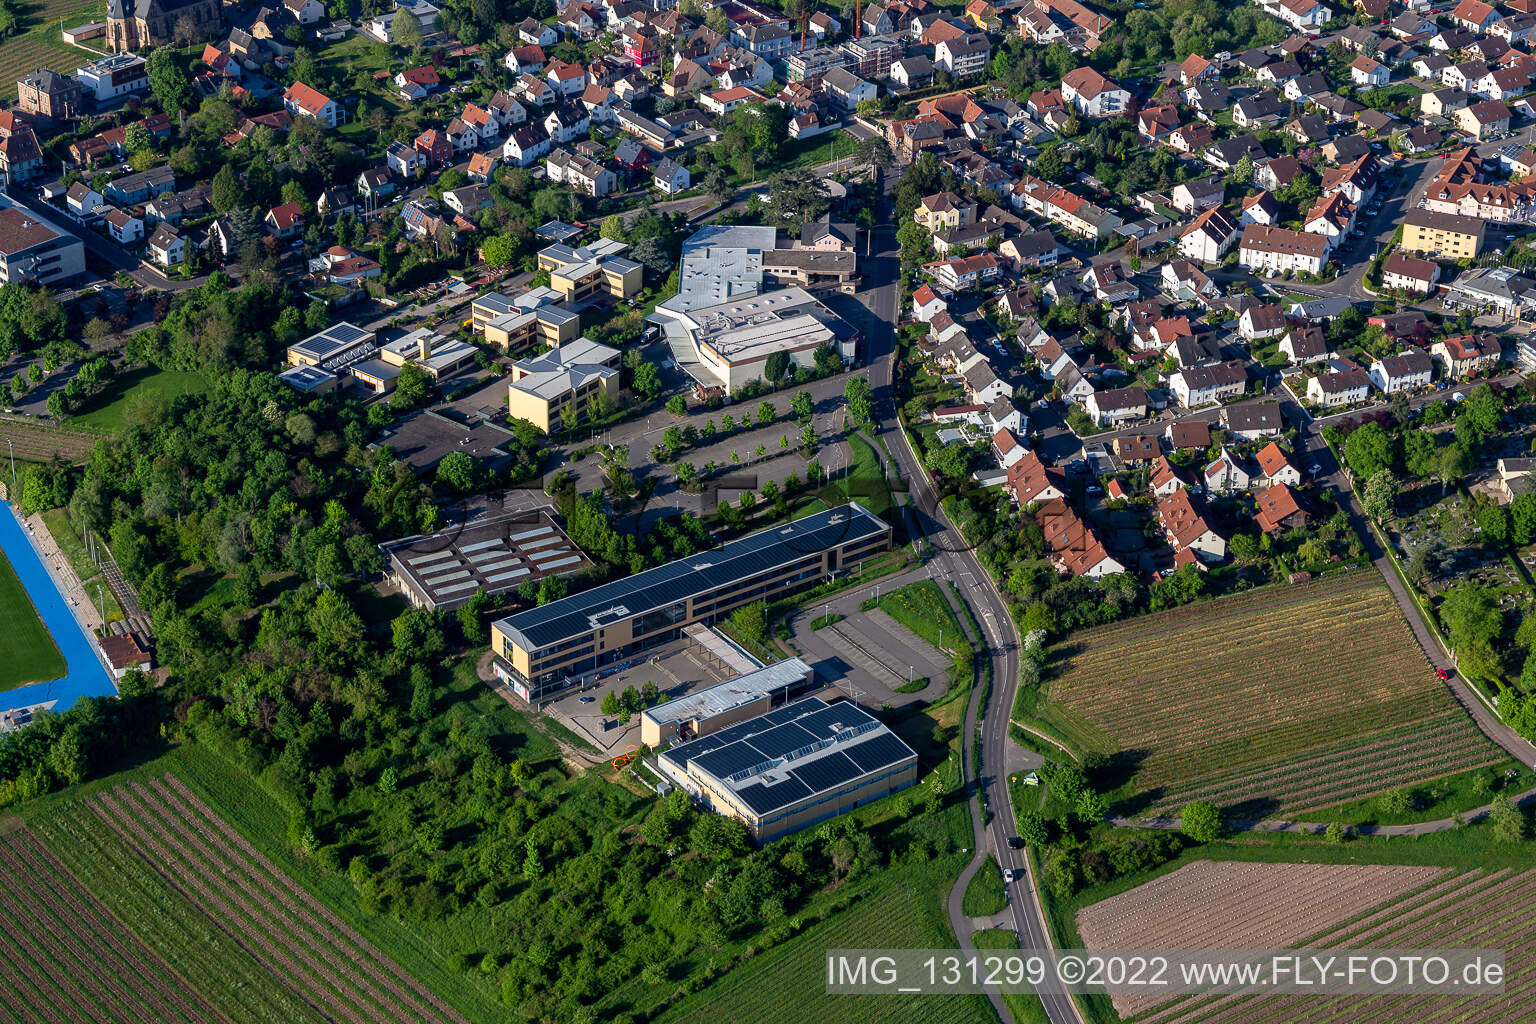 Vue aérienne de Lycée Edenkoben à Maikammer dans le département Rhénanie-Palatinat, Allemagne